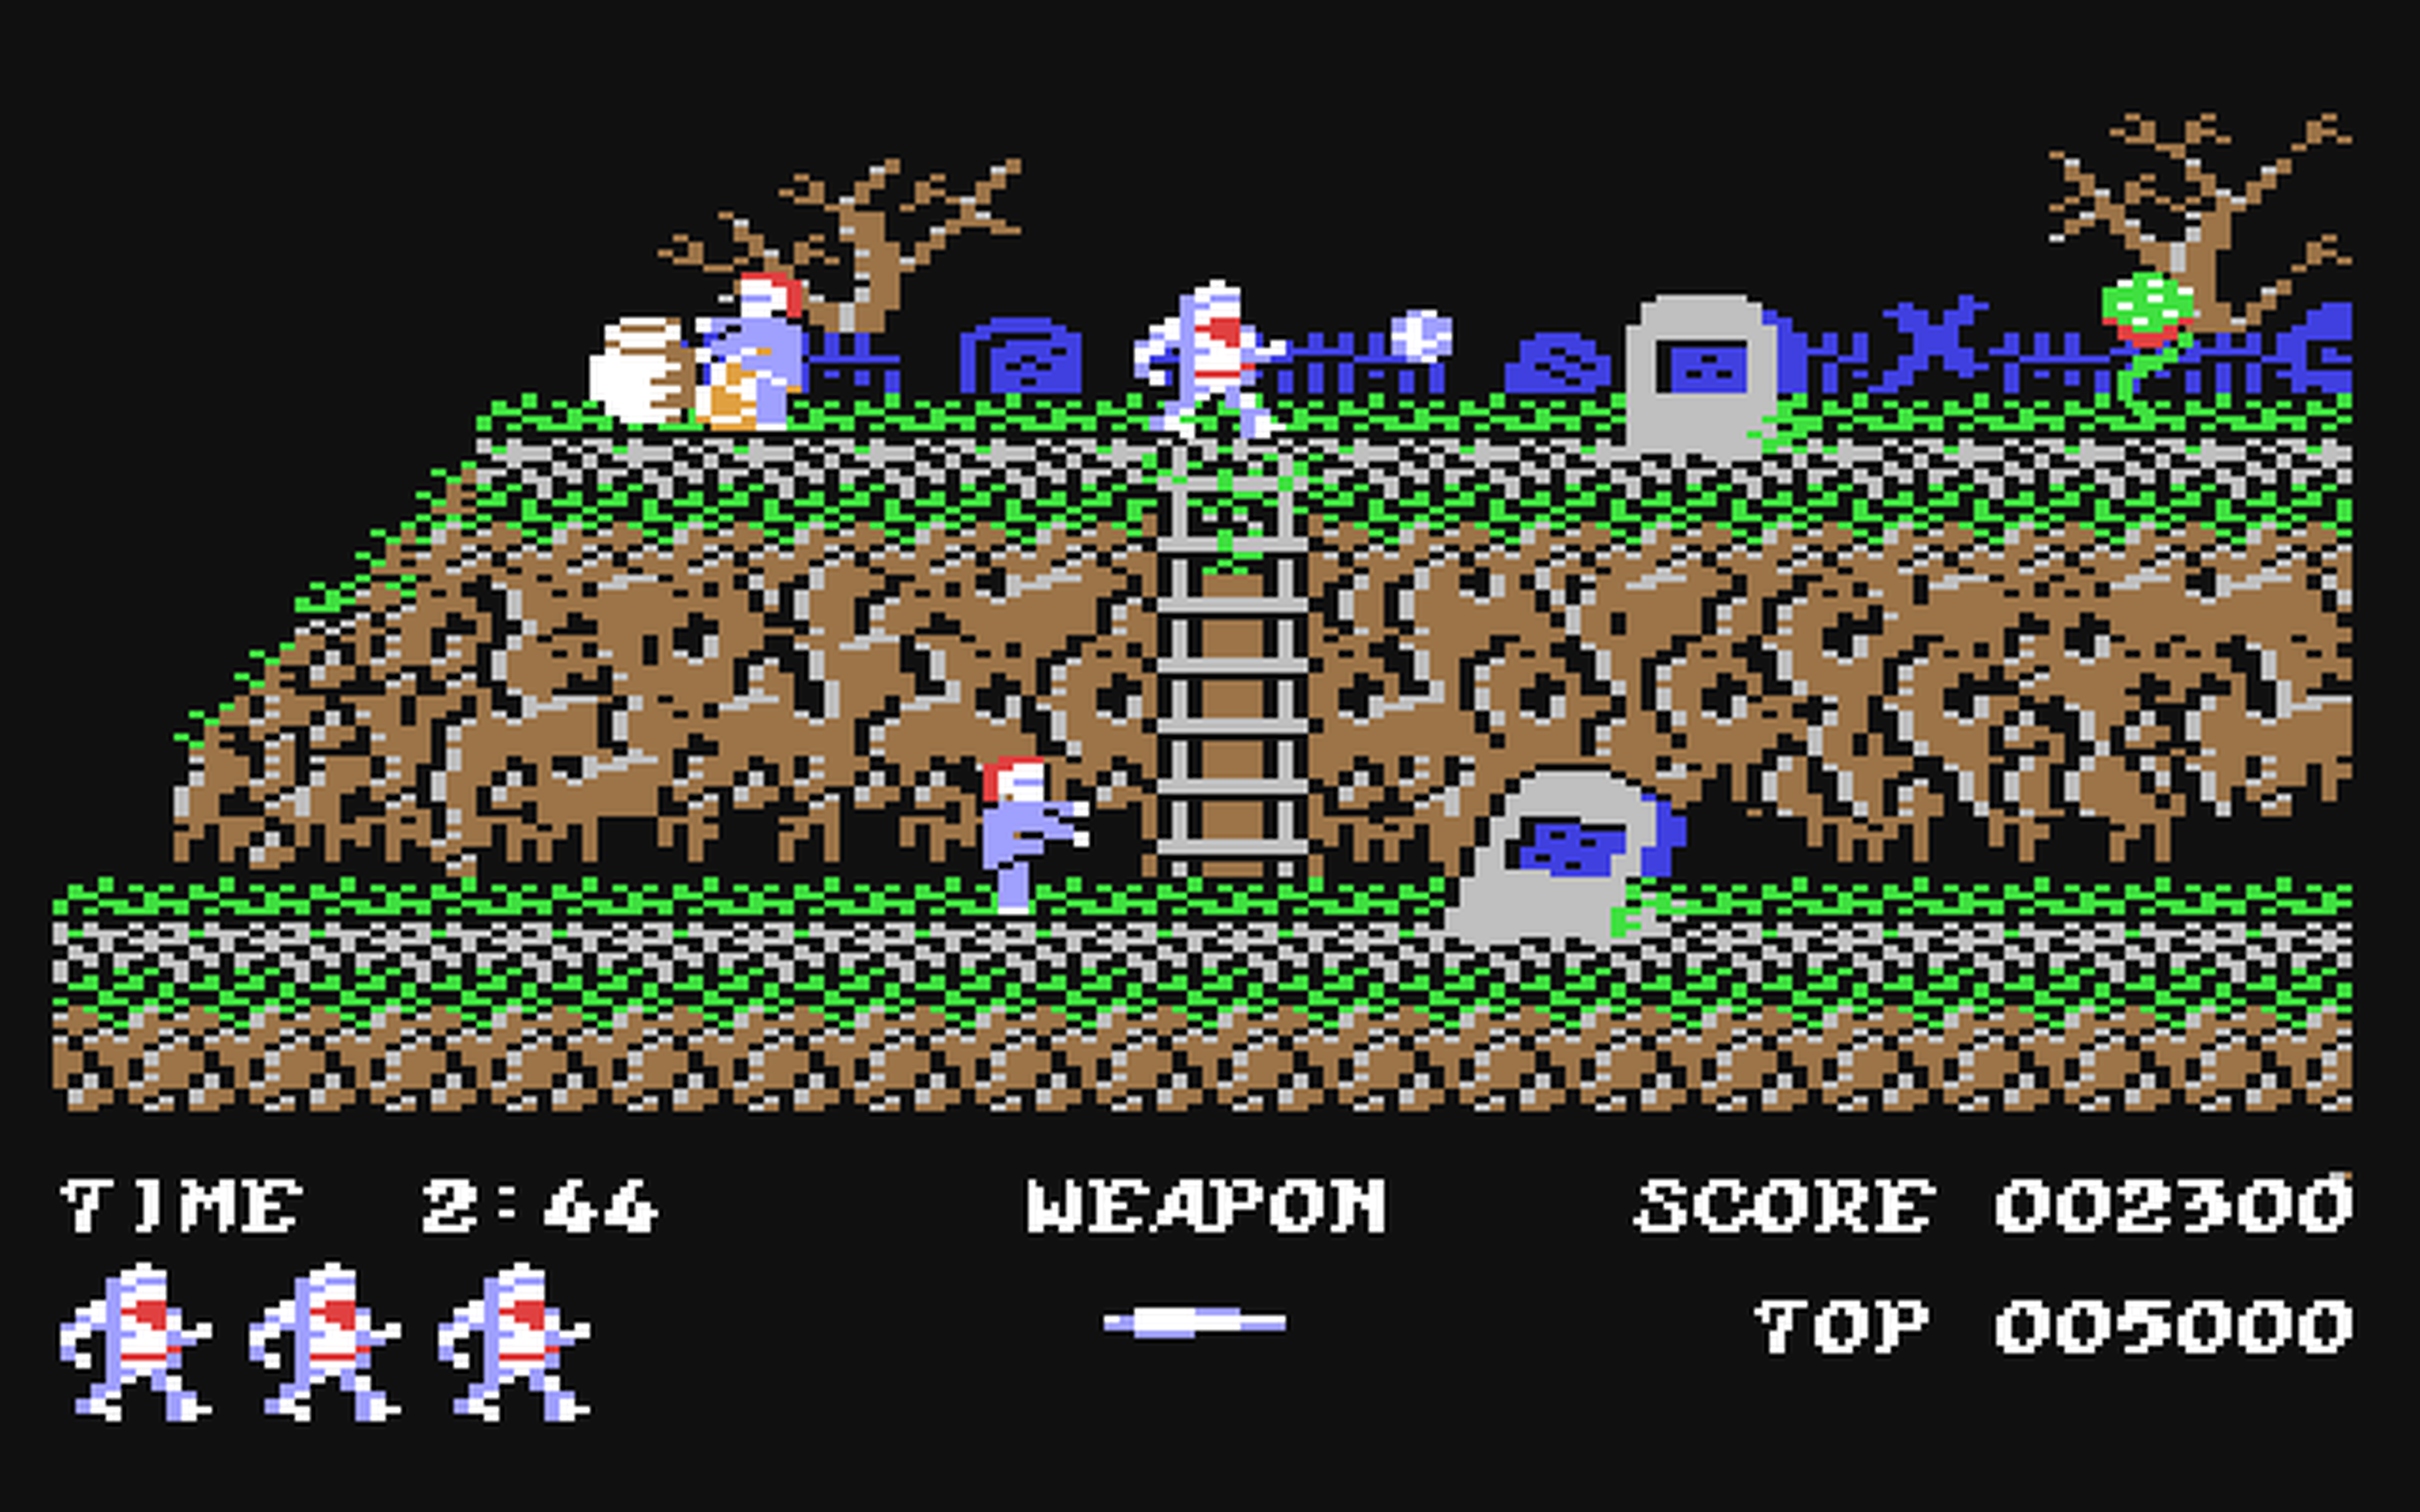 Los 20 mejores juegos de Commodore 64